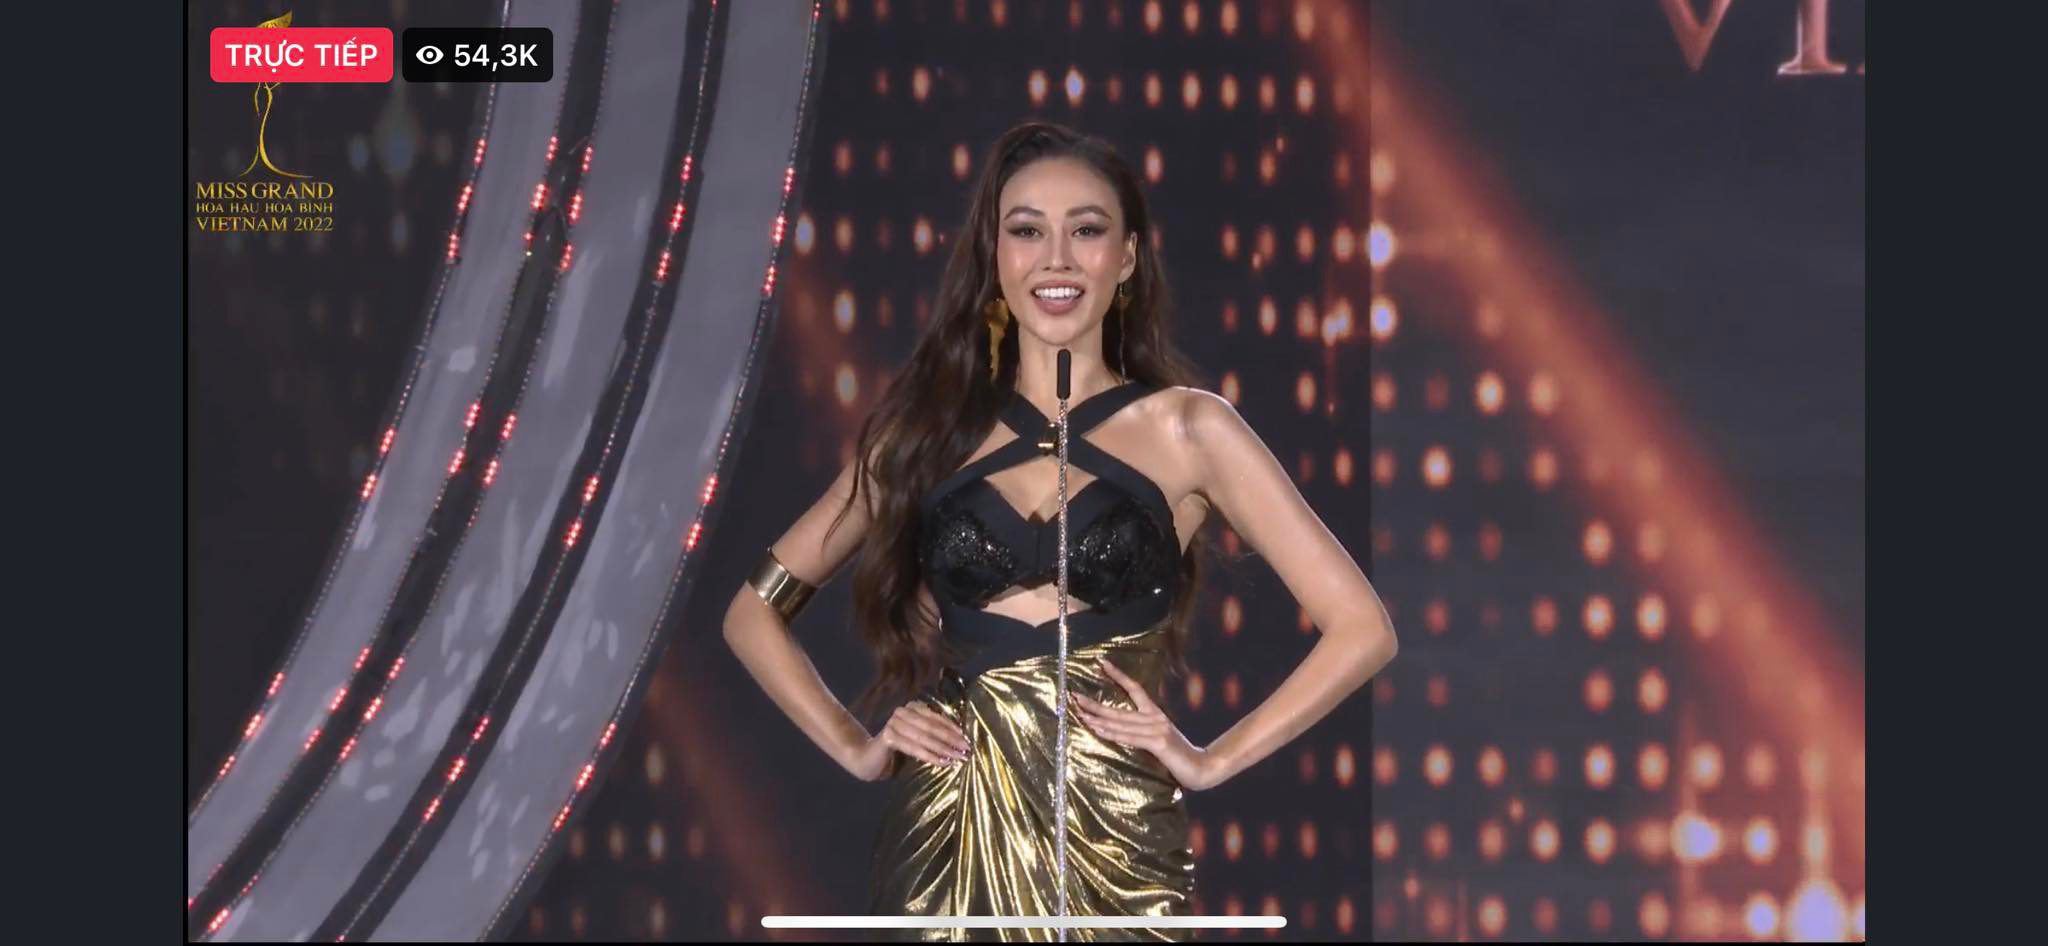 Trực tiếp chung kết Miss Grand Vietnam 2022: Tân Hoa hậu gọi tên Đoàn Thiên Ân - 36